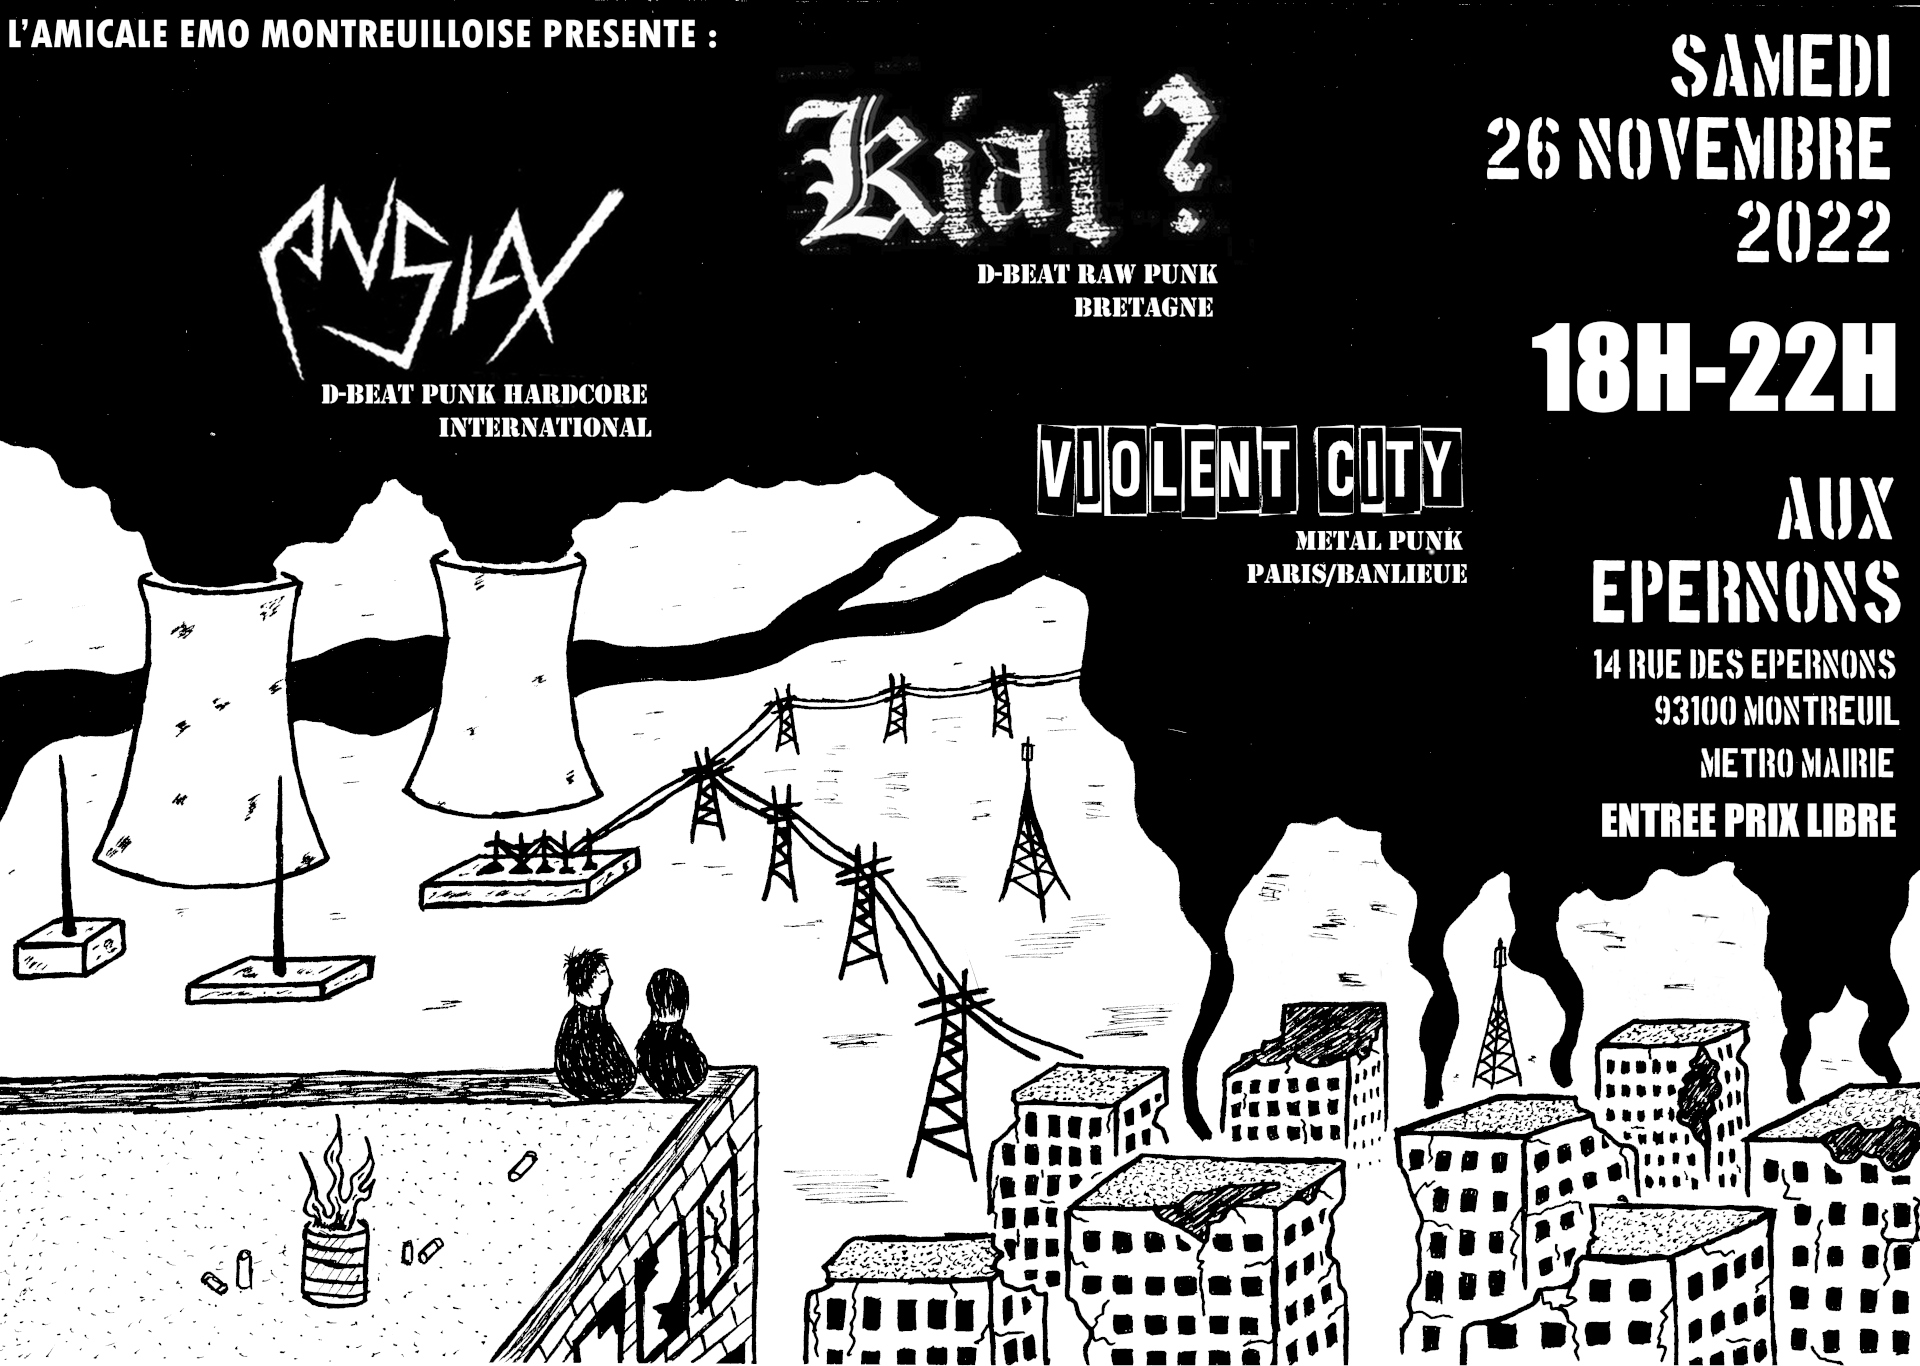 Concert-26-novembre-ANSIAX-KIAL-VIOLENT-CITY.jpg